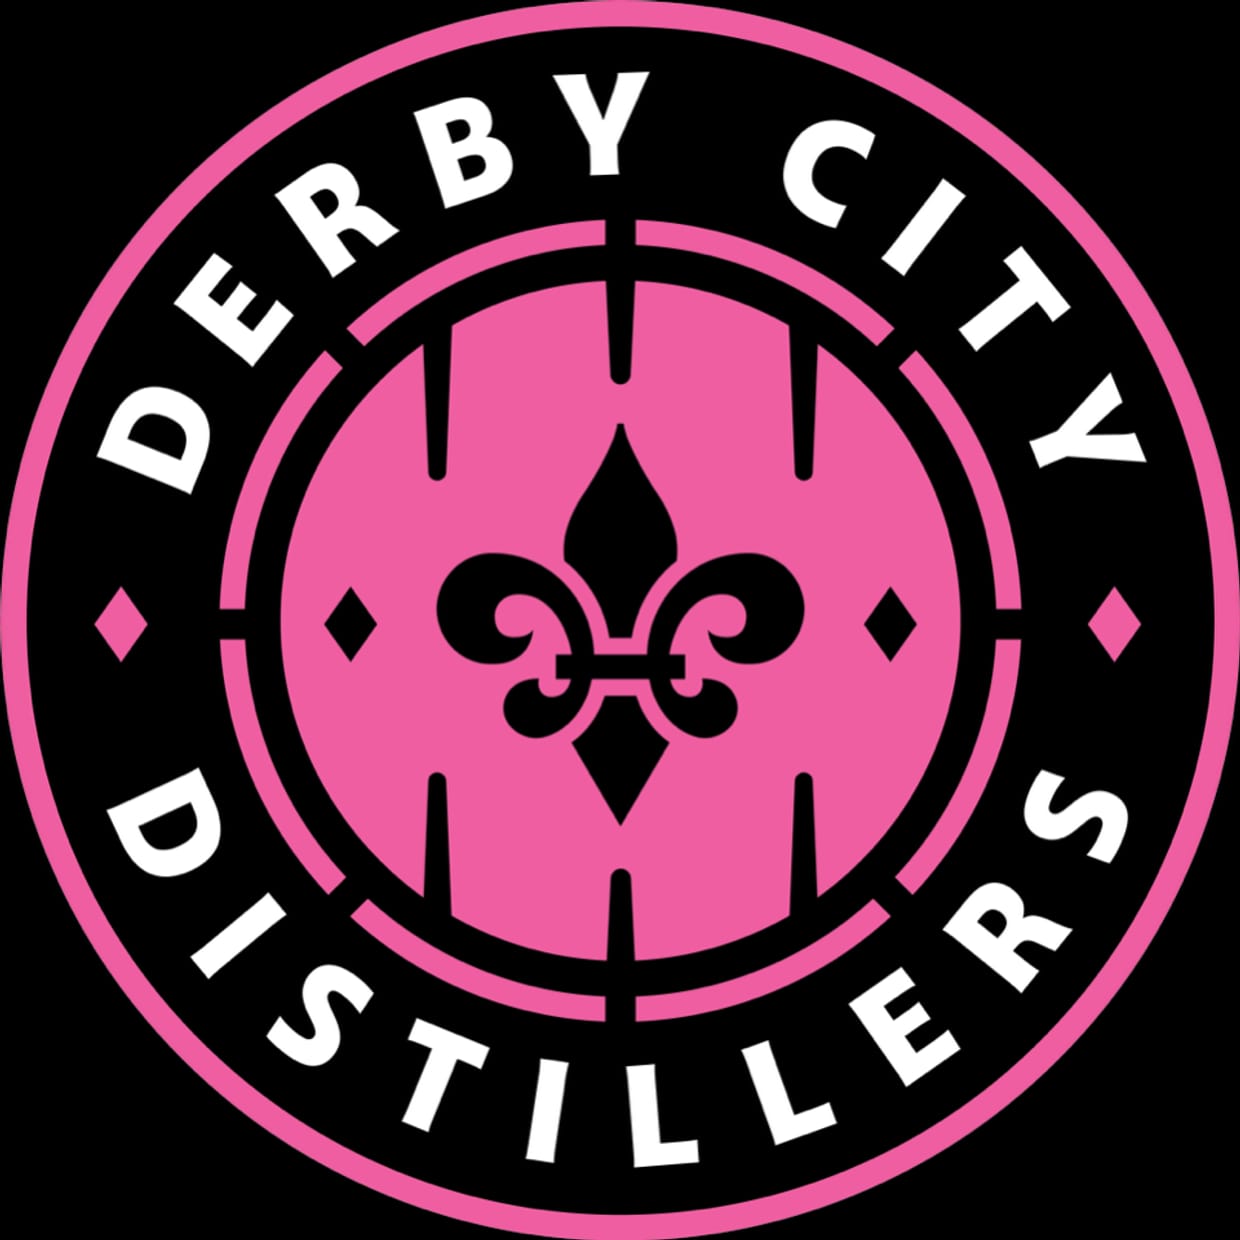 Derby City Distillers v. Kentucky Enforcers